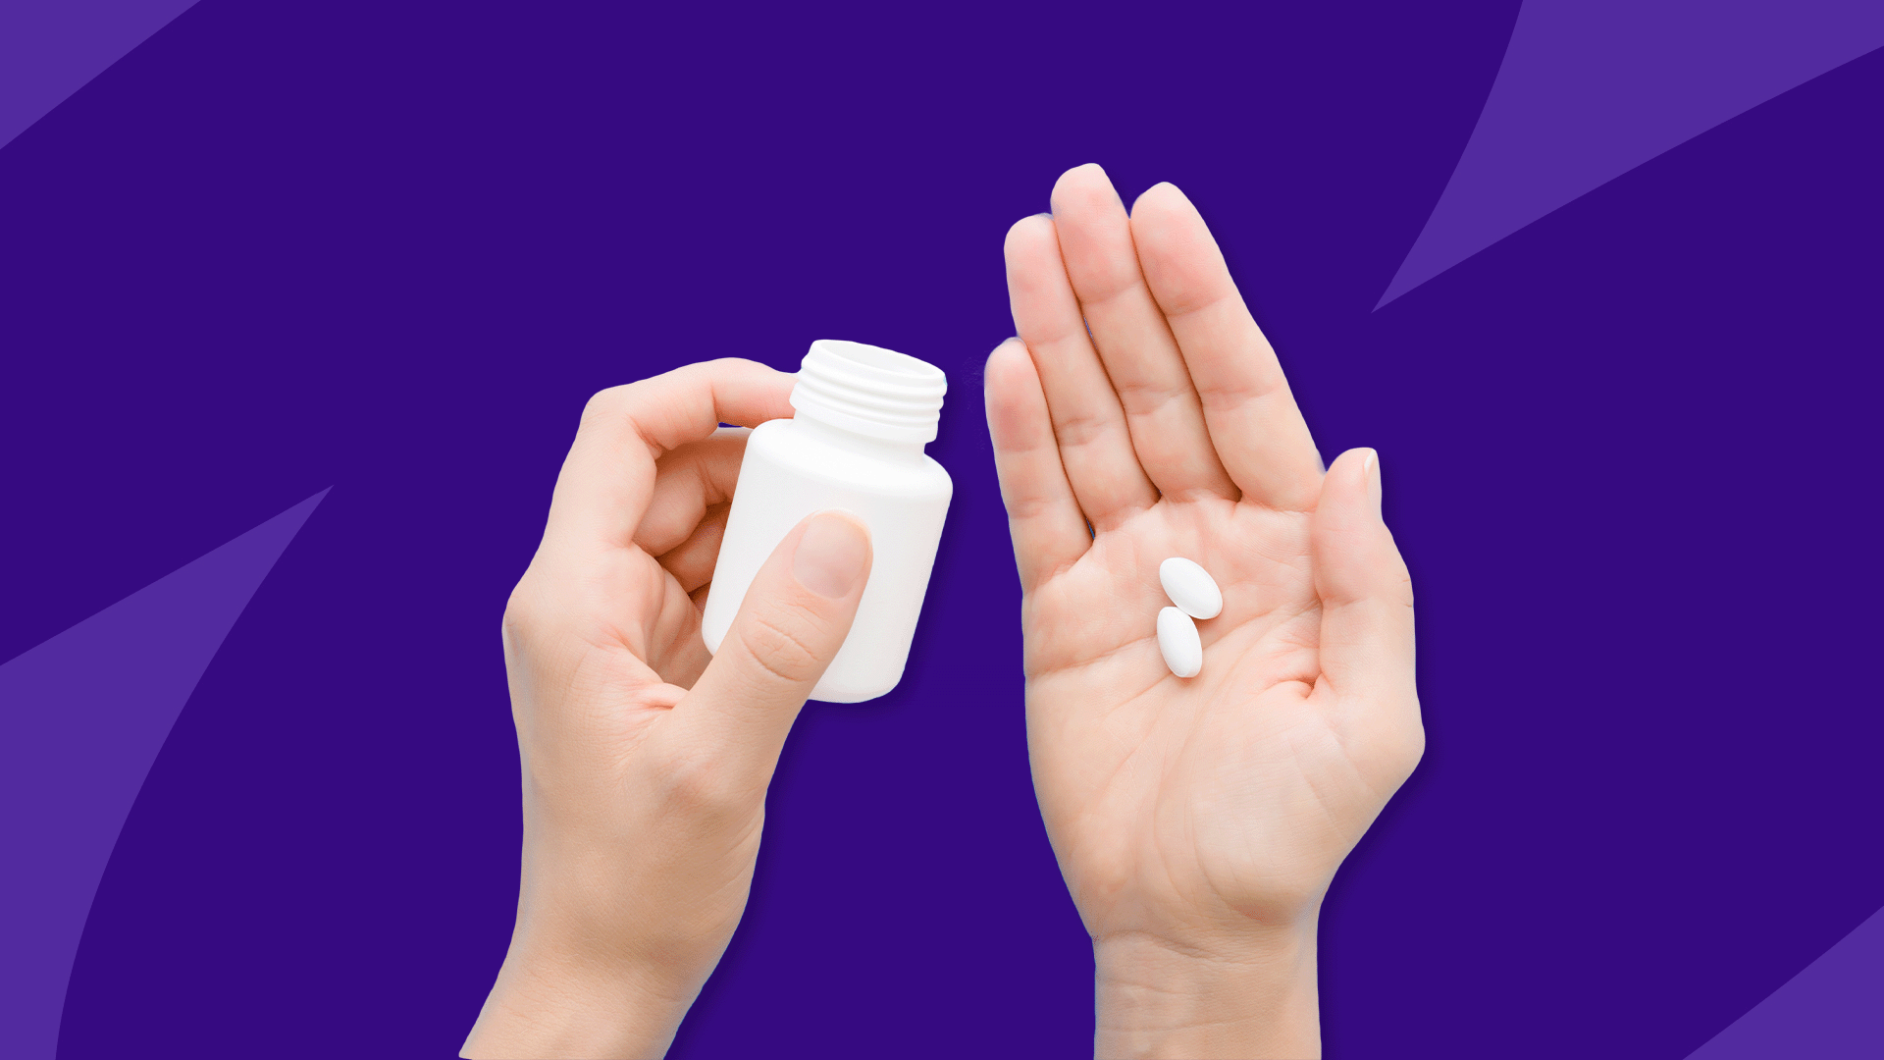 Hands holding Rx pills and pill bottle: Zoloft weight gain